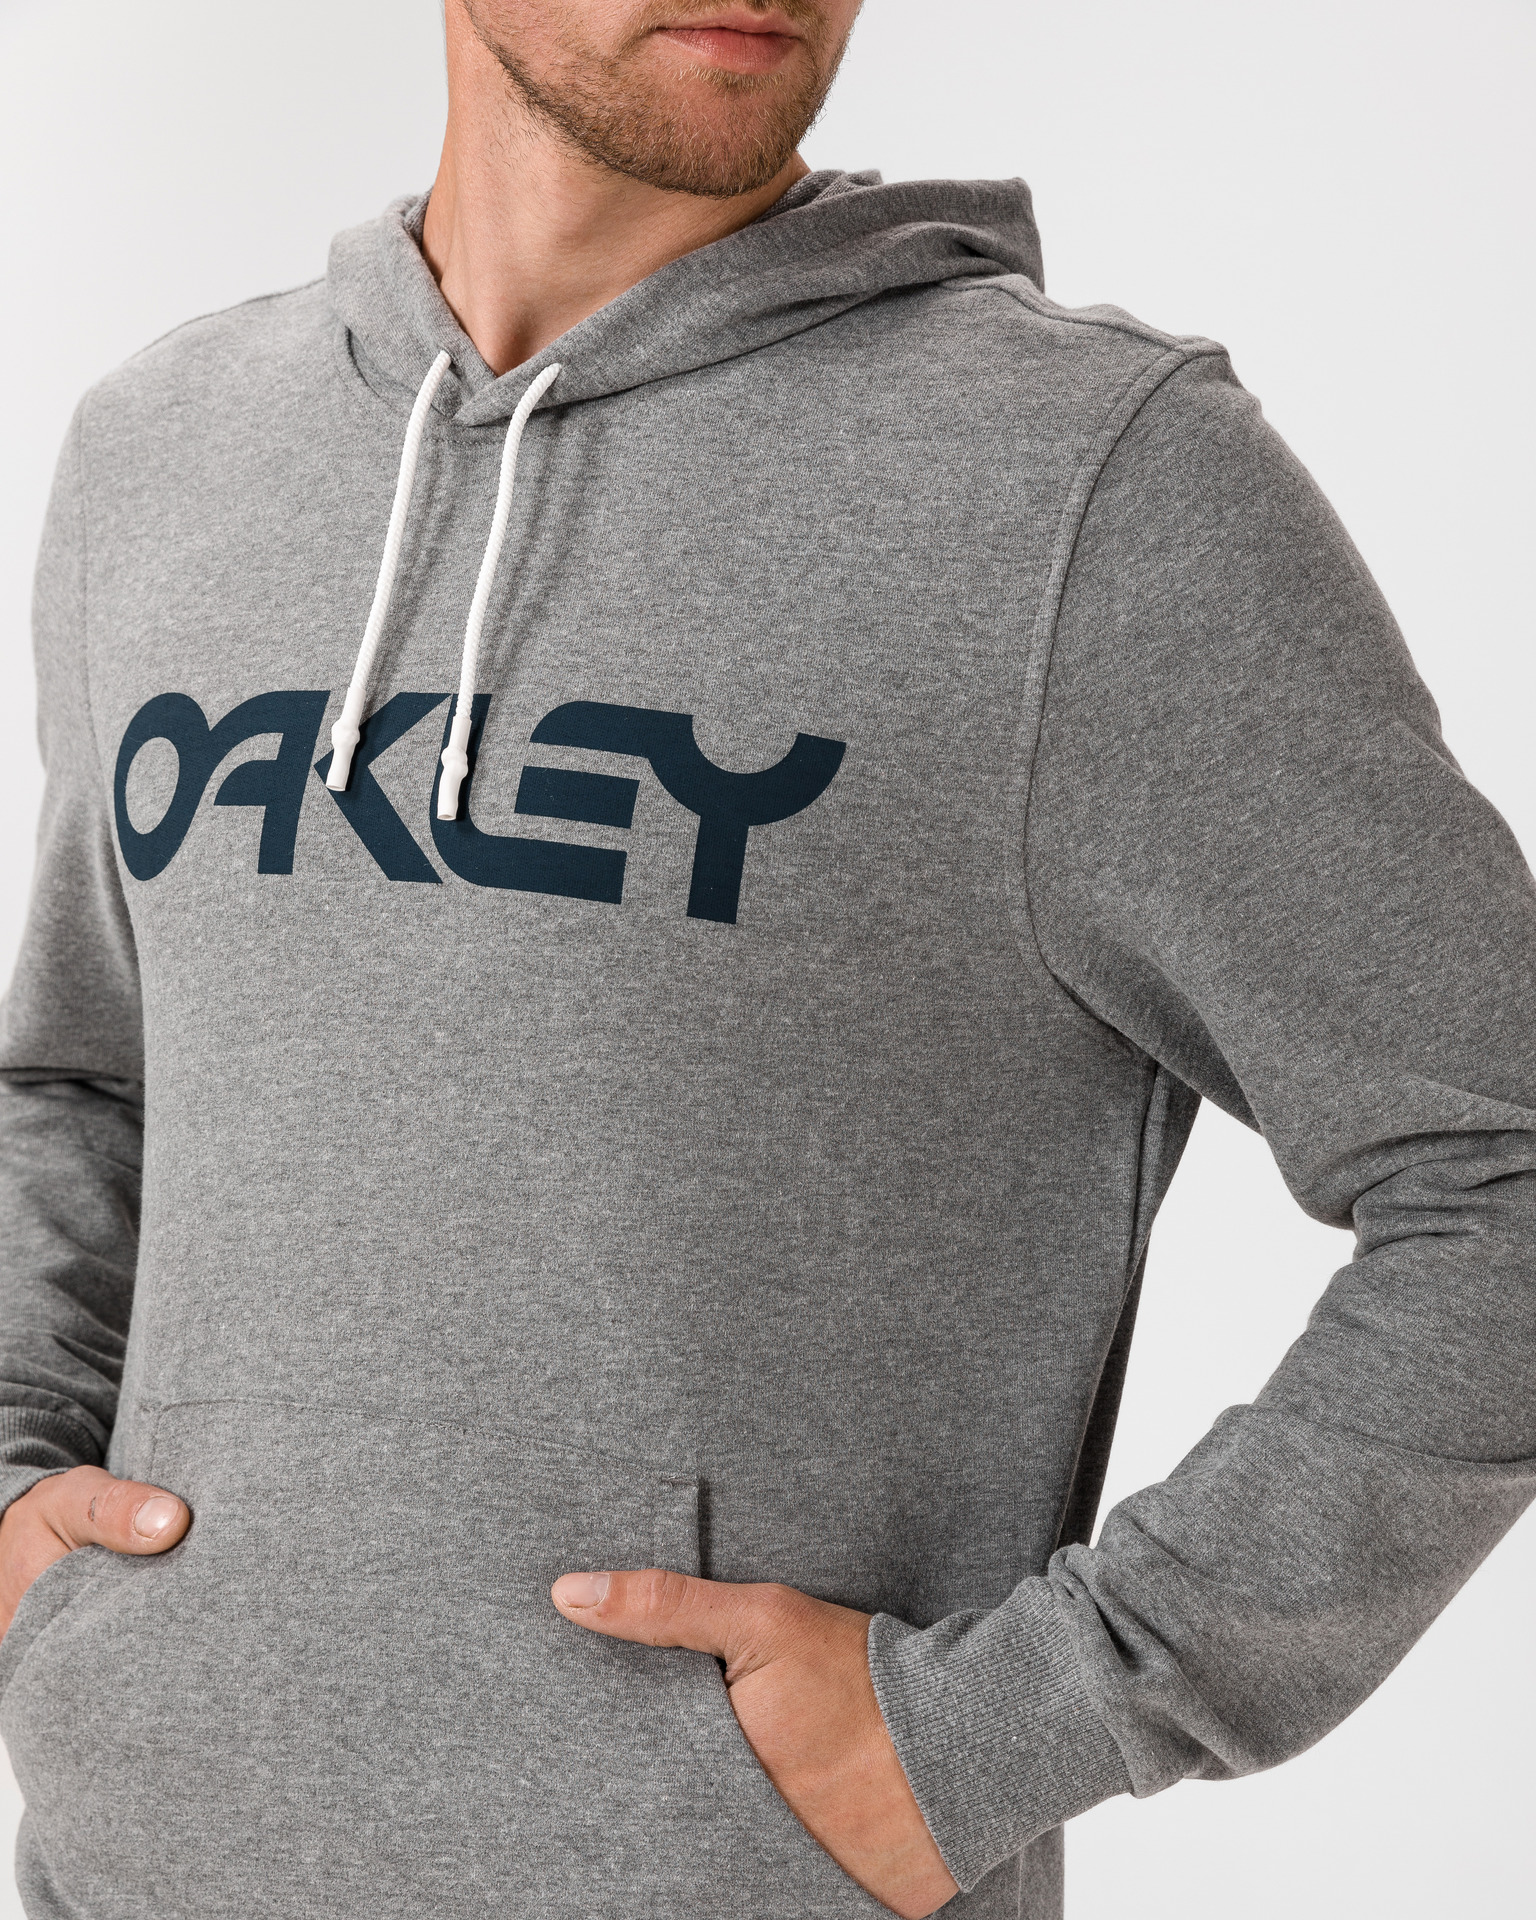 Oakley - Sweatshirt 